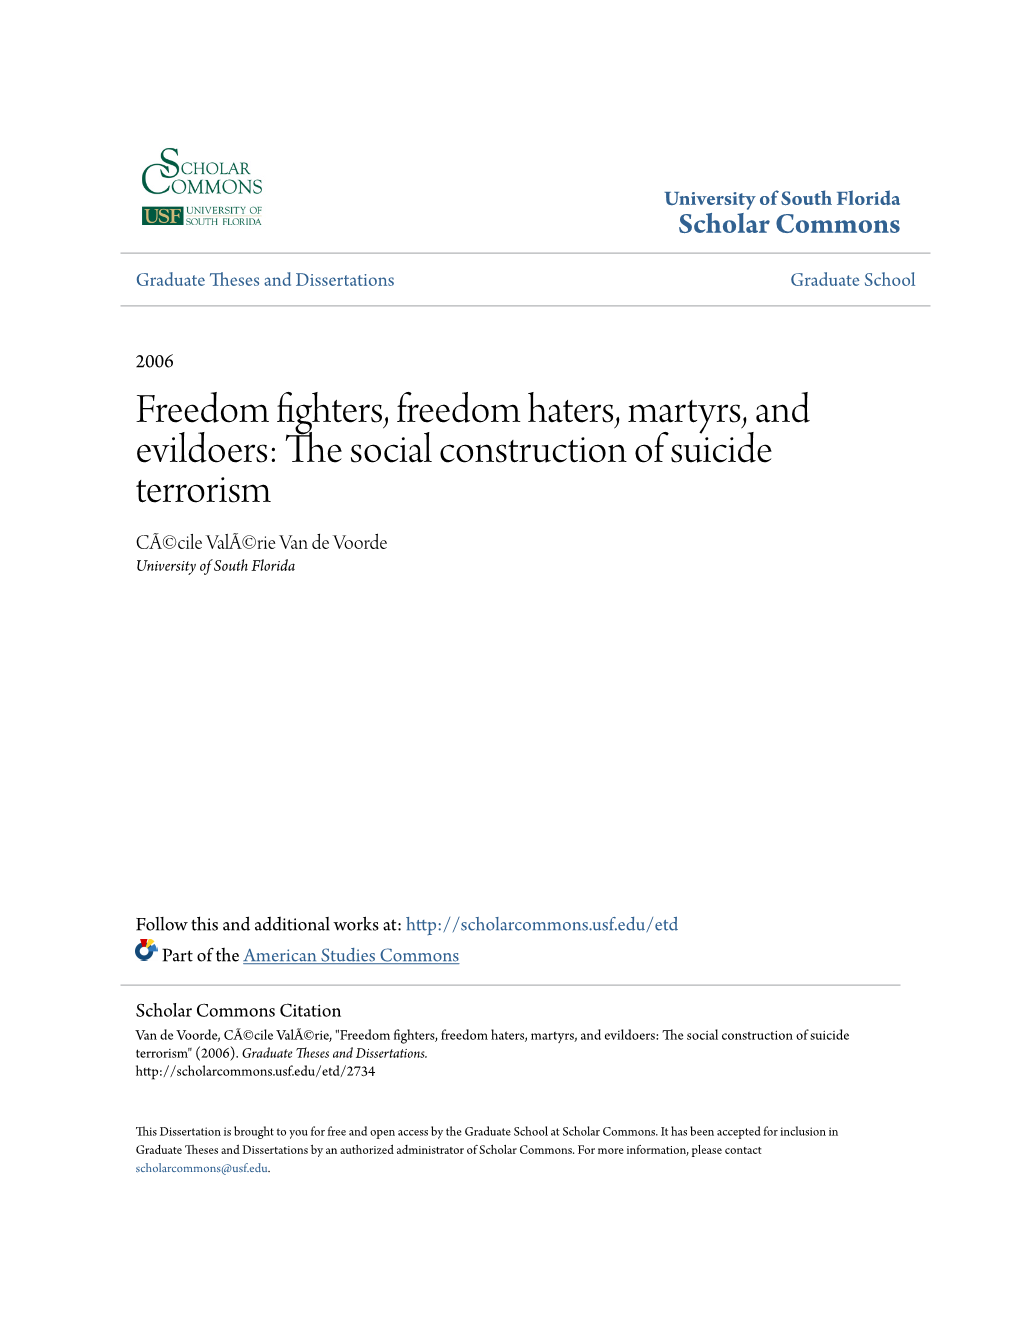 The Social Construction of Suicide Terrorism CÃ©Cile Valã©Rie Van De Voorde University of South Florida